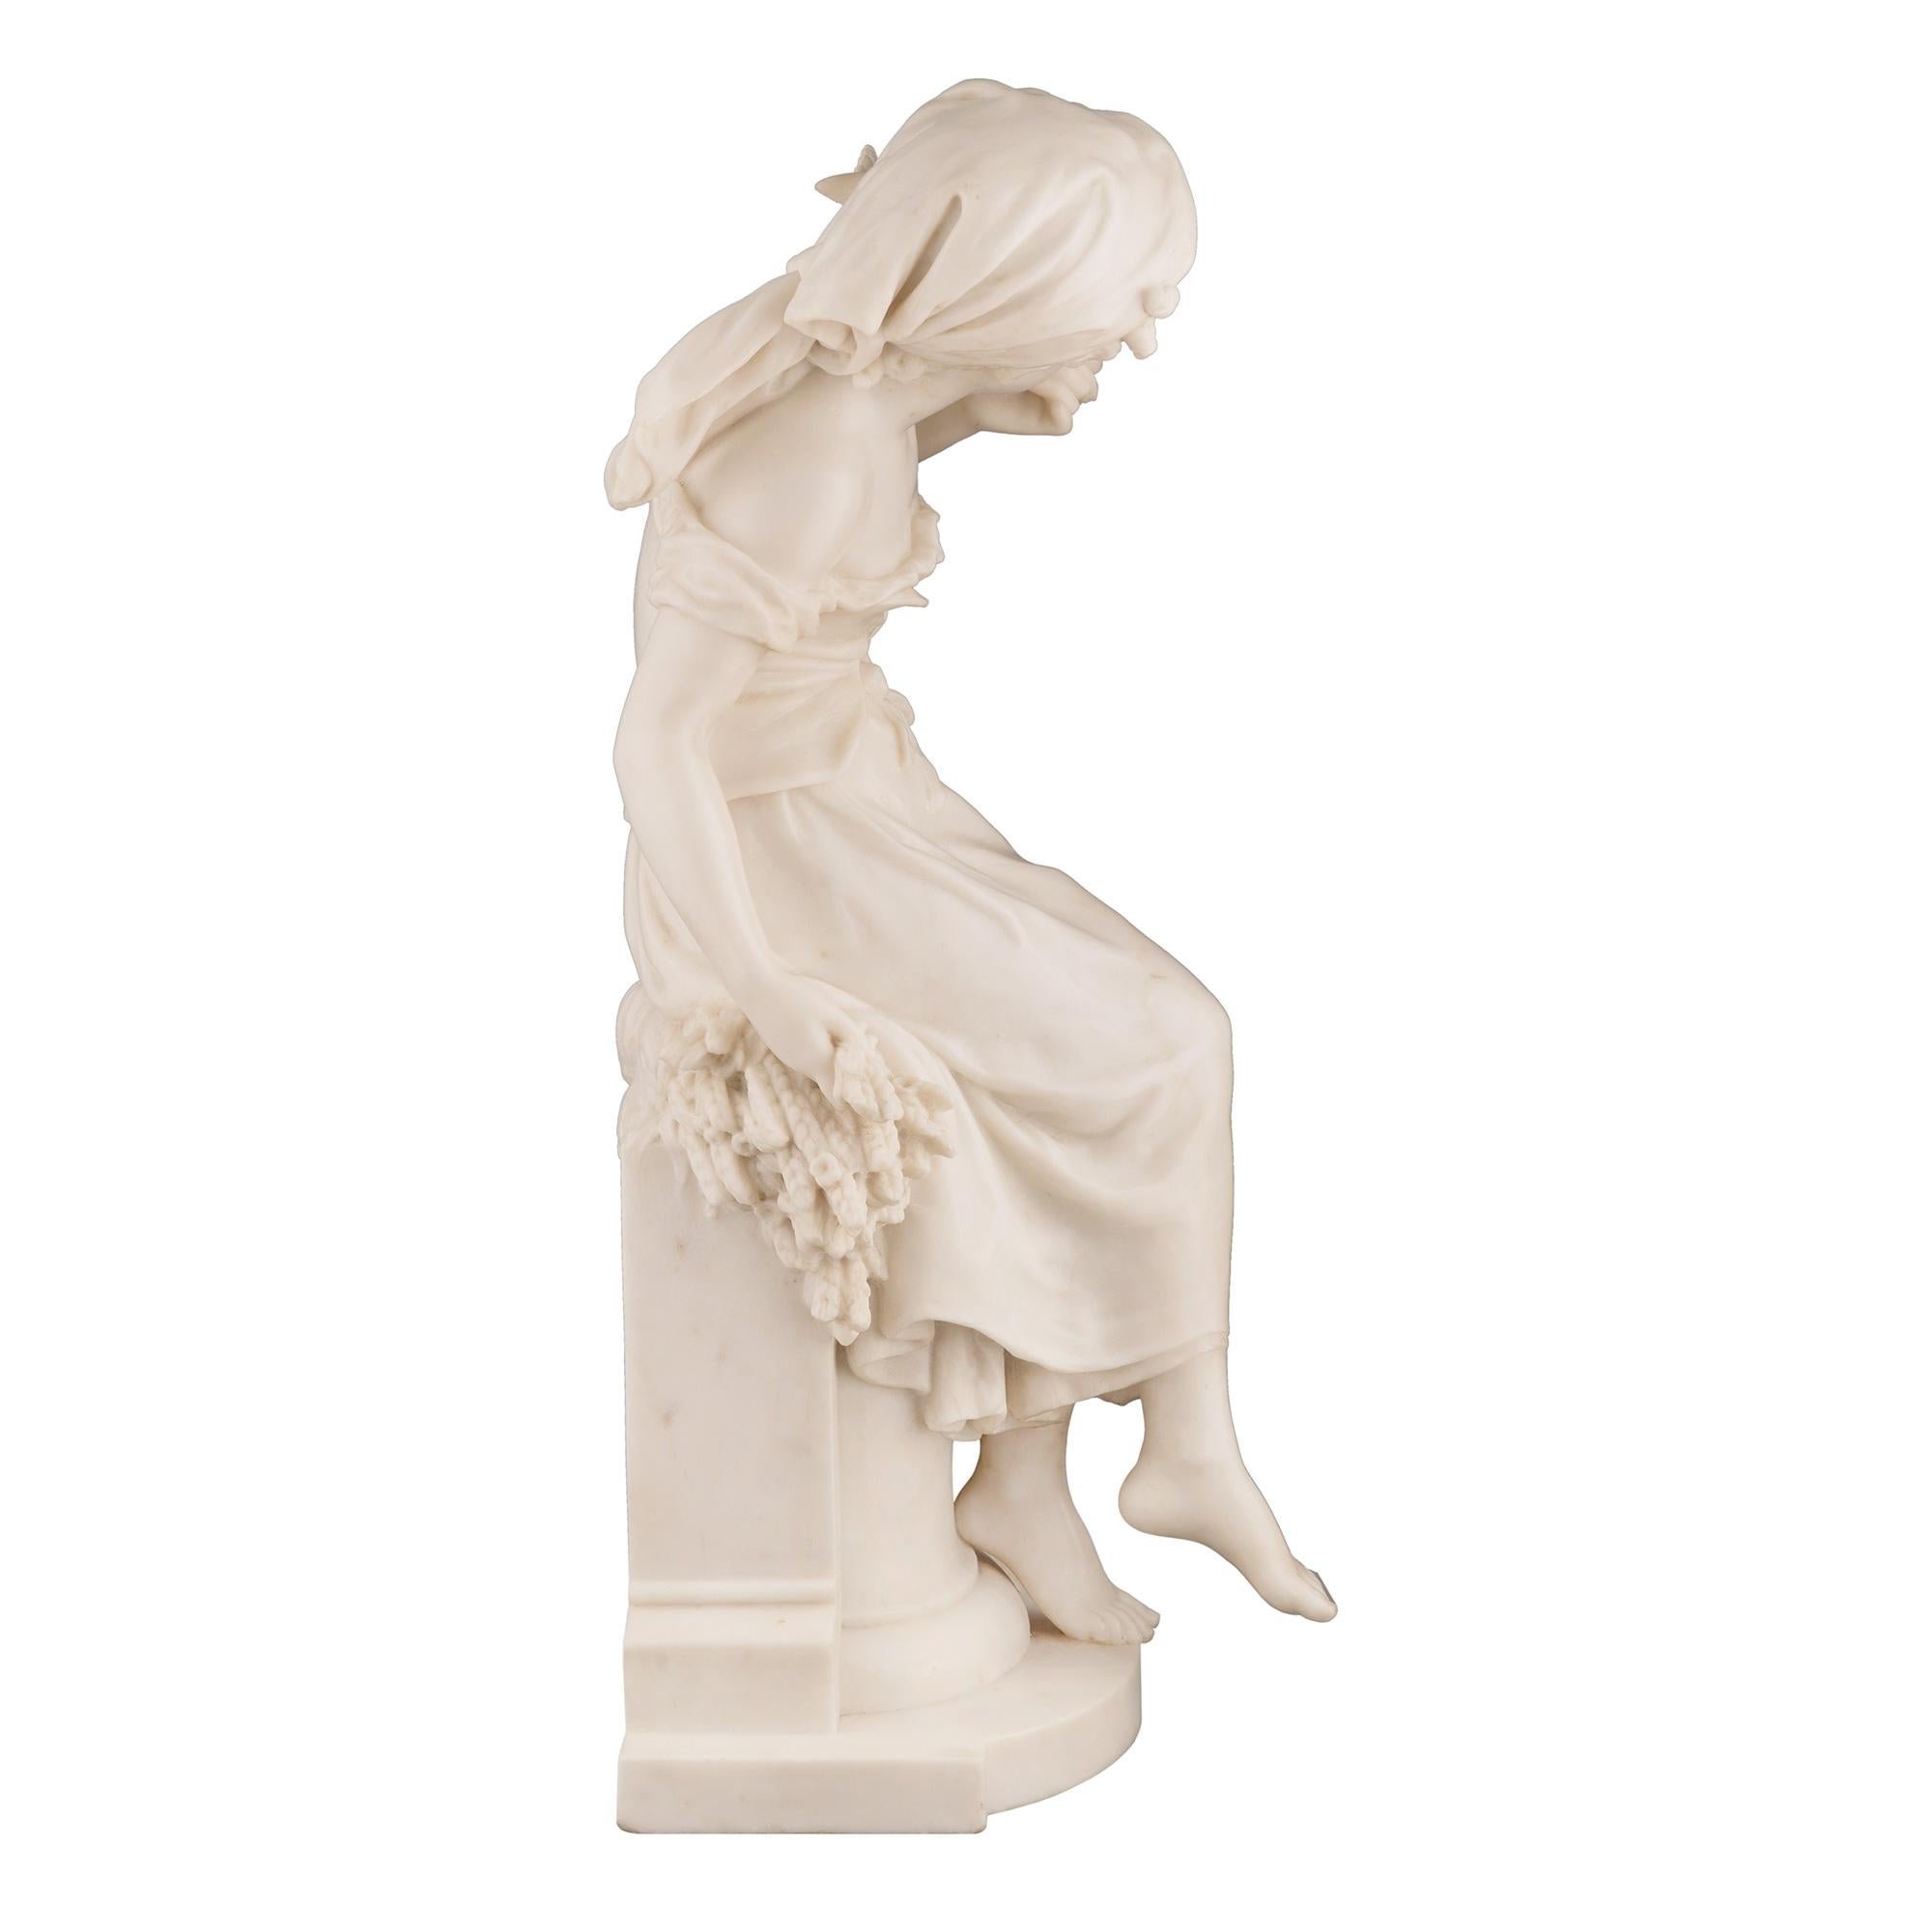 Superbe statue française du XIXe siècle en marbre blanc de Carrare représentant une belle jeune fille, signée Math Moreau. La statue est surélevée par un gradin en forme de demi-lune avec un élégant piédestal présentant une bordure mouchetée avec